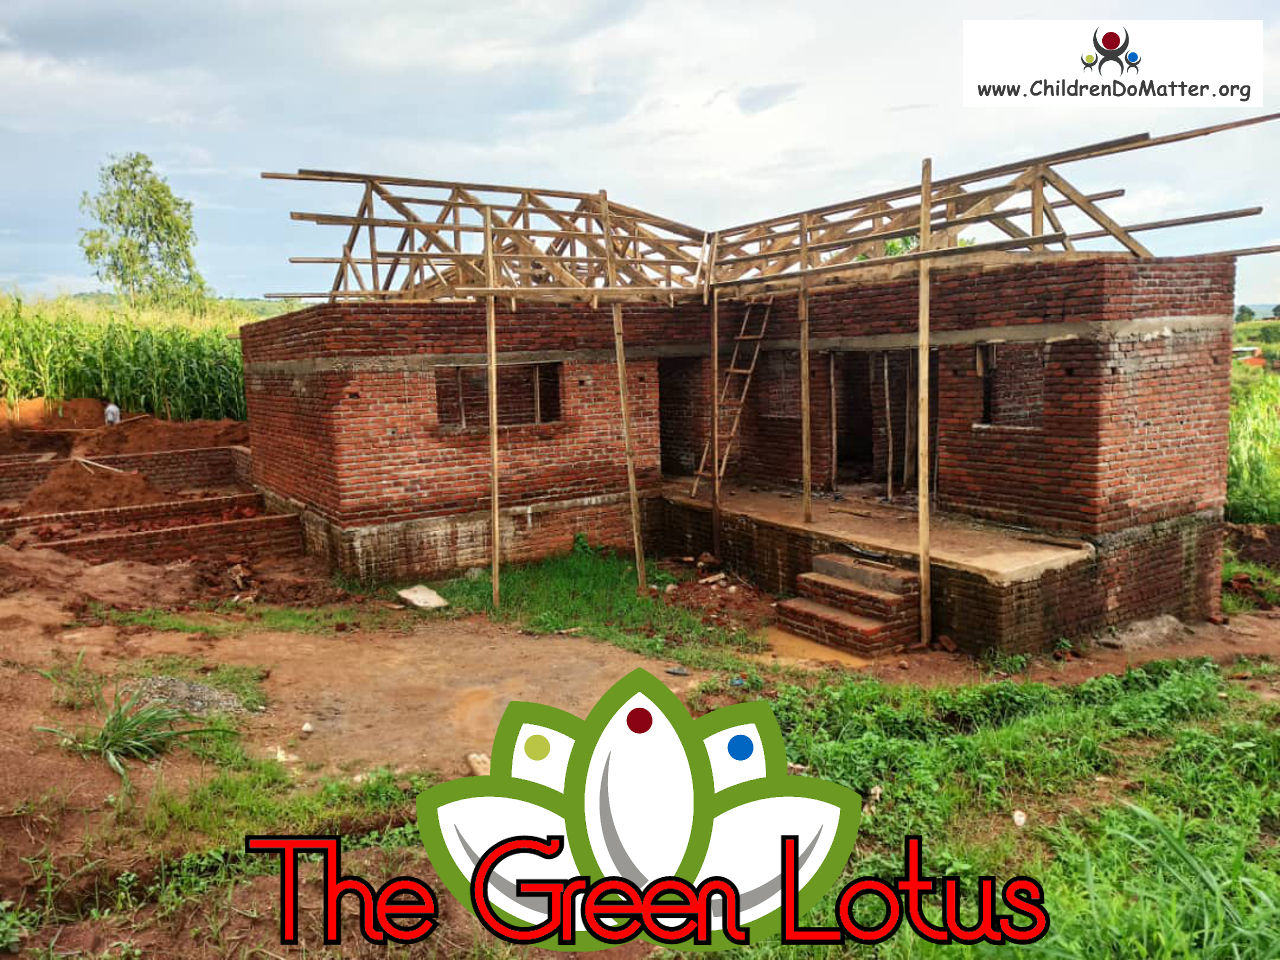 costruzione dell'orfanotrofio casa di accoglienza the green lotus a blantyre malawi - children do matter - 17